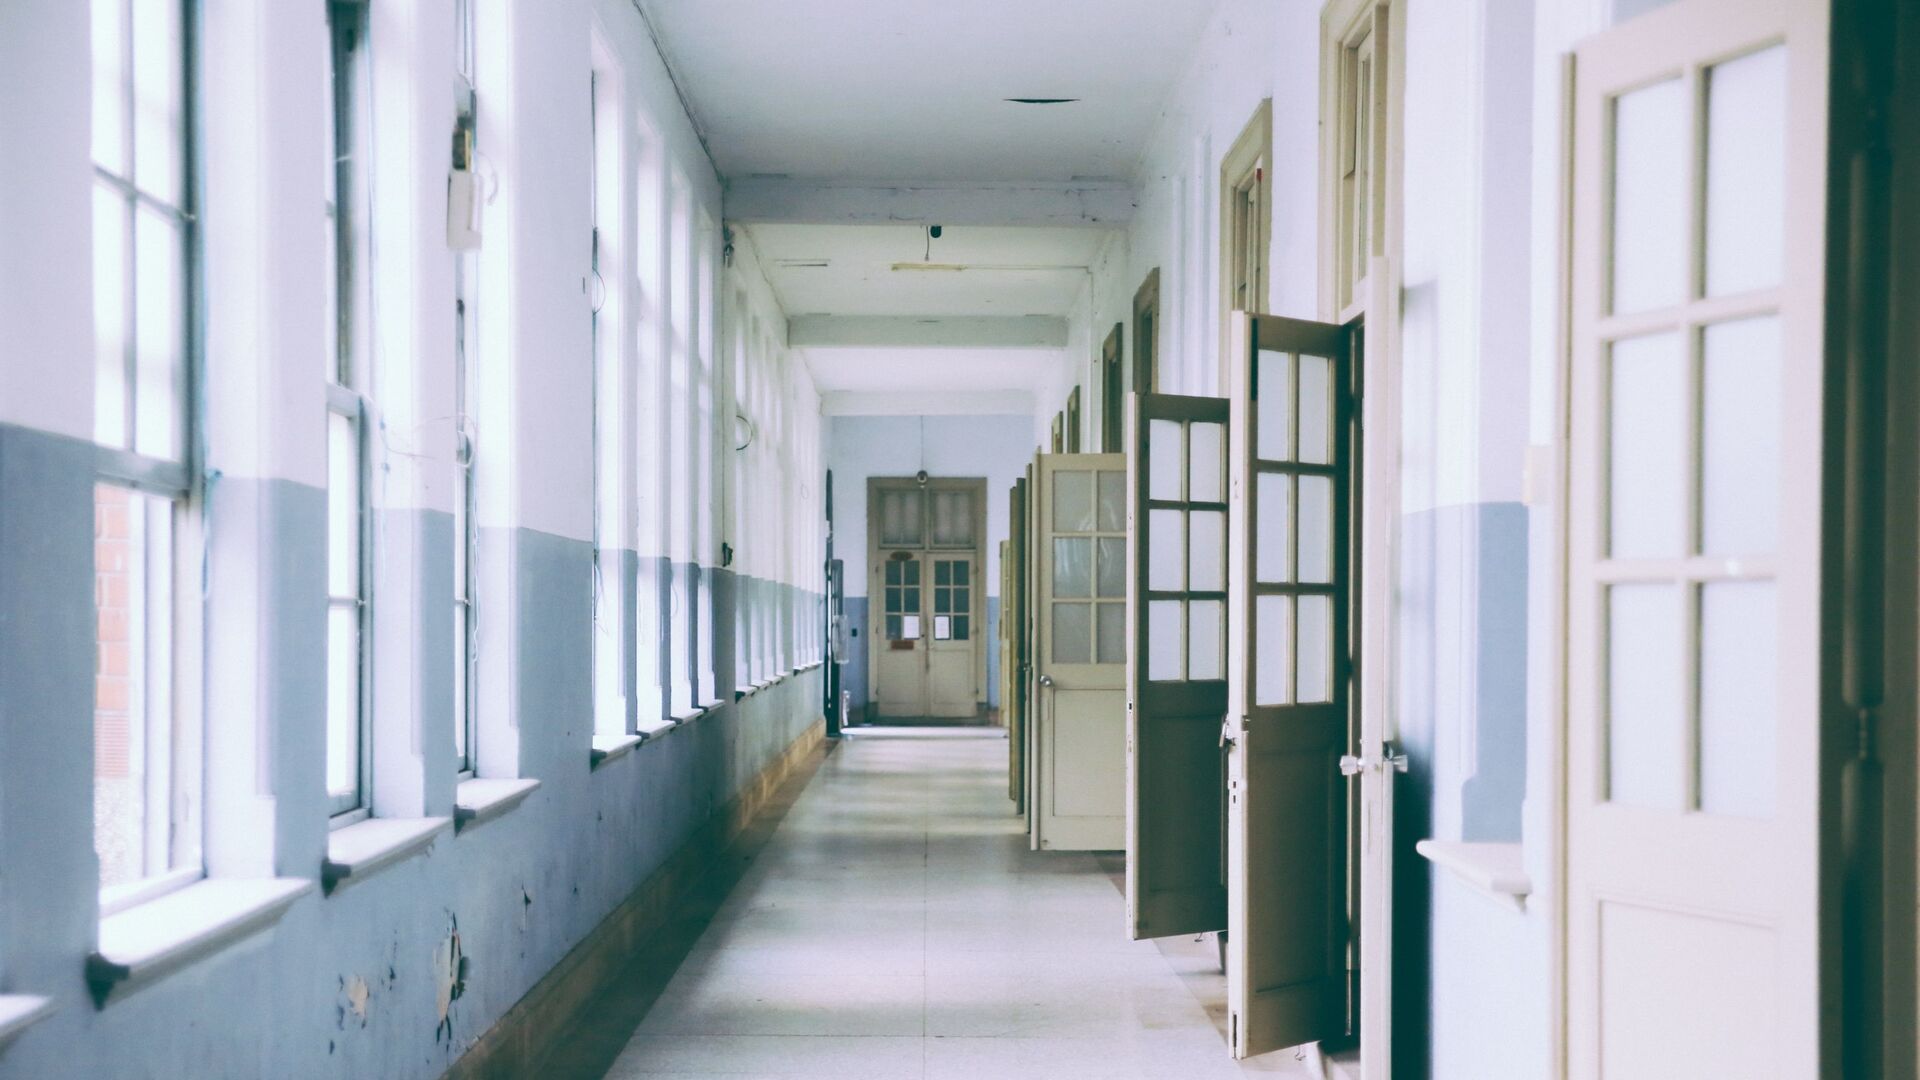 Школьный коридор, фото из архива - Sputnik Азербайджан, 1920, 07.12.2021